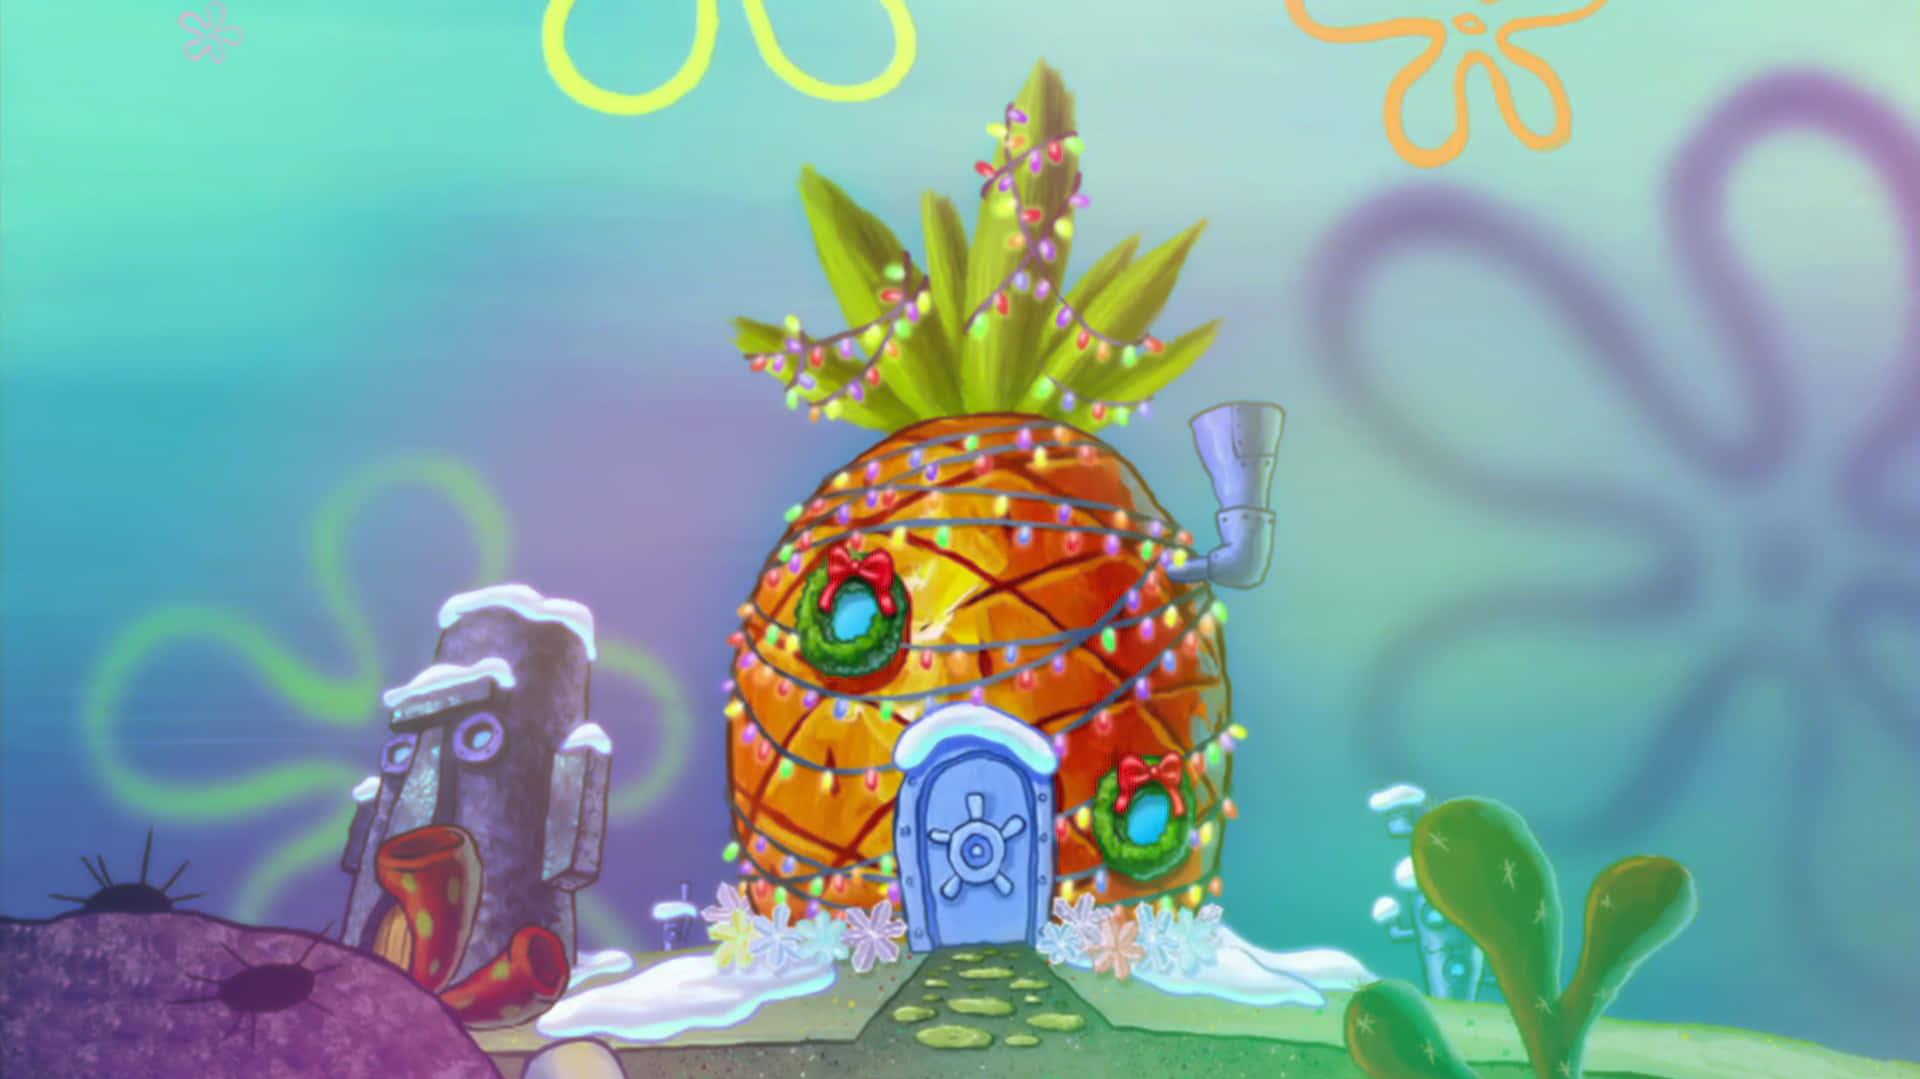 Take A Look Inside Spongebob S Pineapple Home Wallpaper